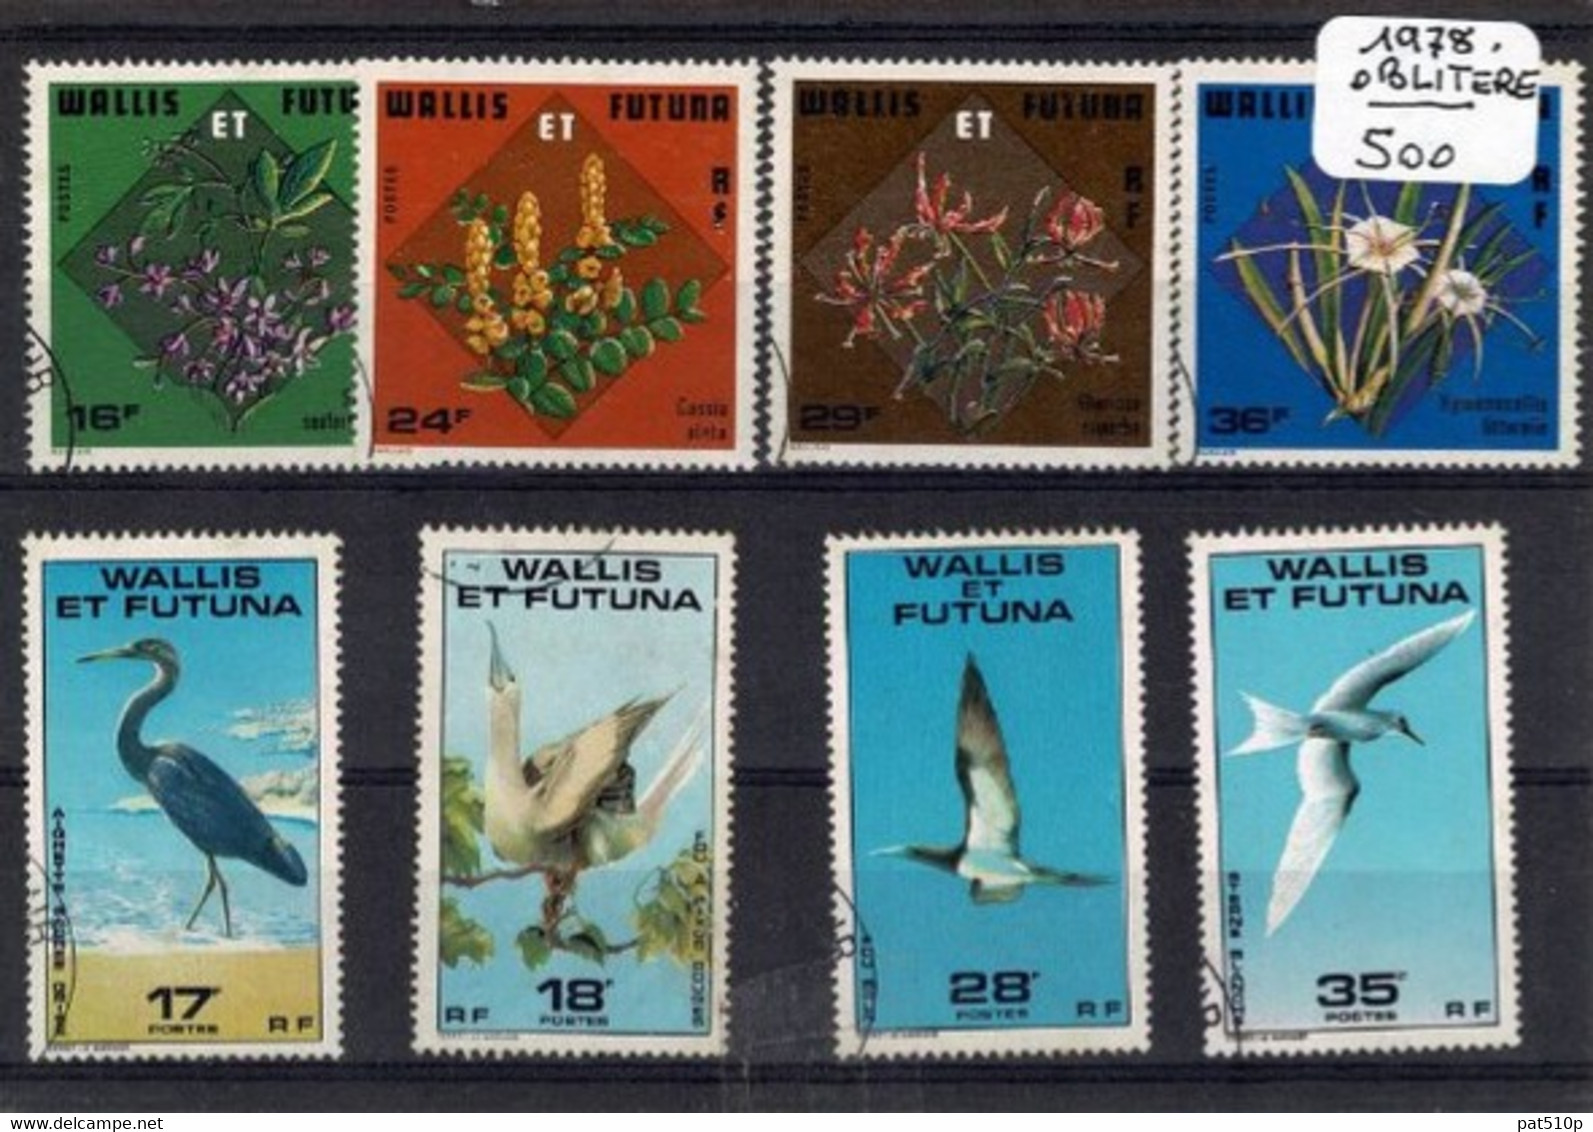 WALLIS FUTUNA Lot 1978 - Used Stamps